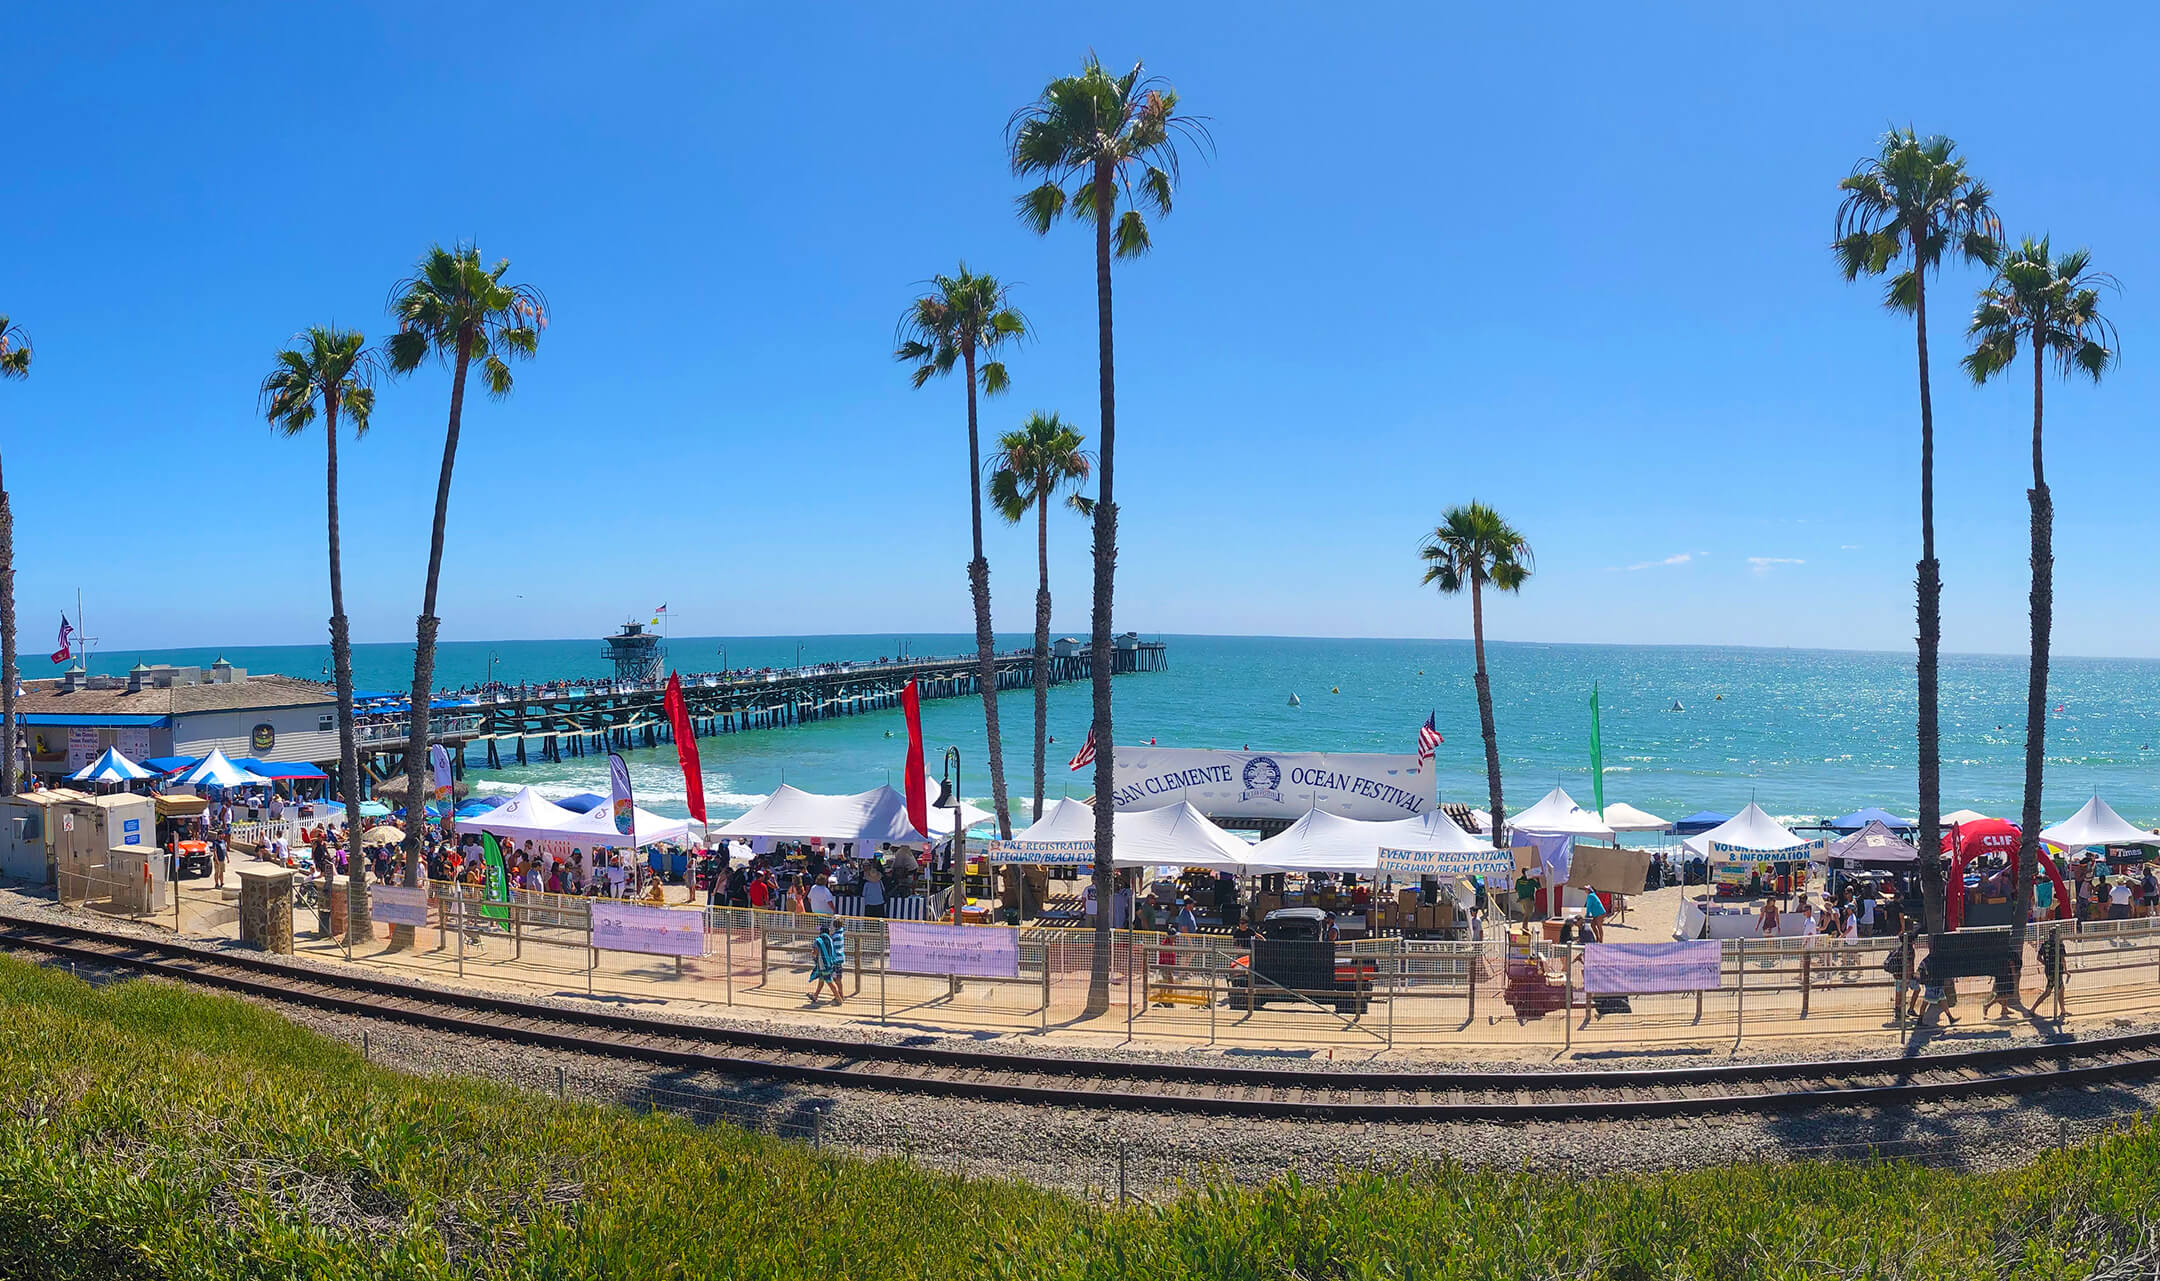 San Clemente’s annual Ocean Festival